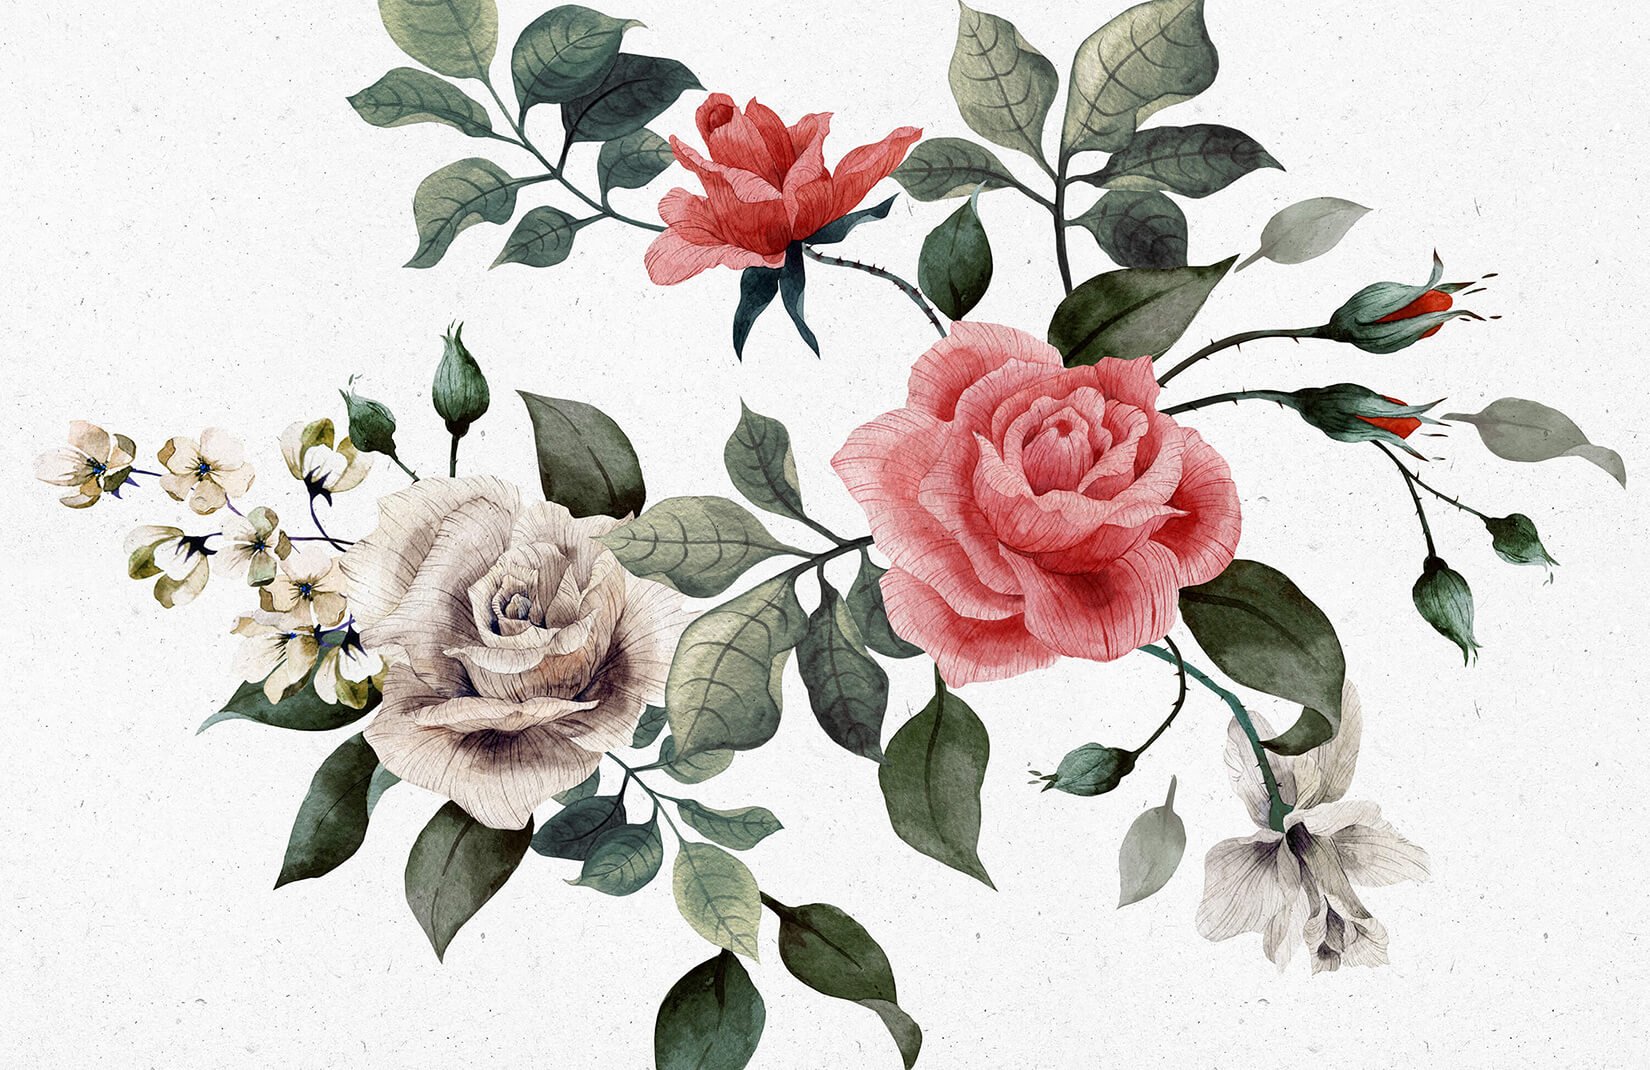 red and white rose wallpaper,flower,flowering plant,plant,garden roses,rose